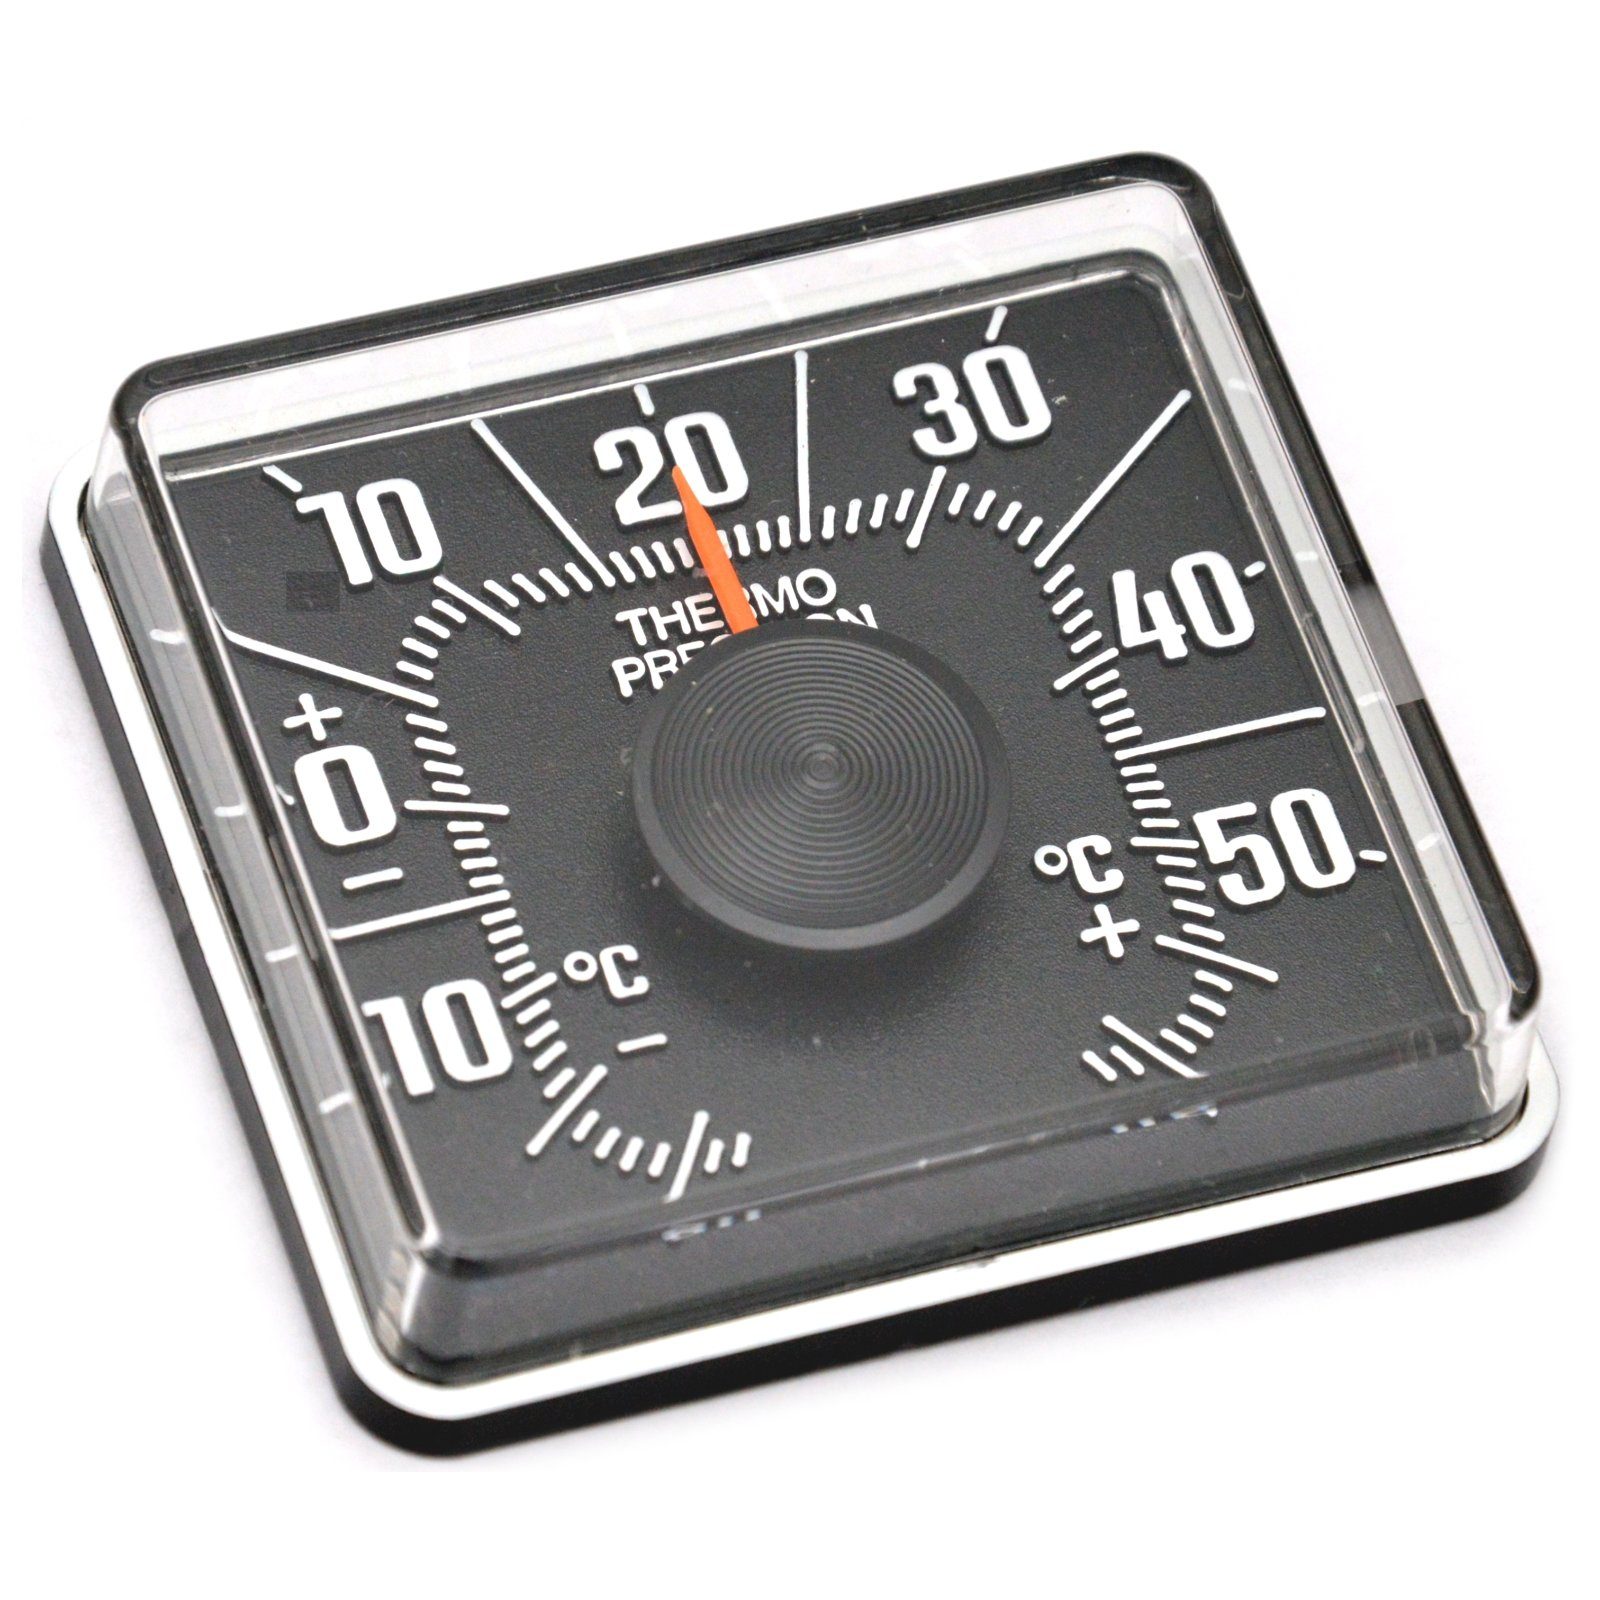 HR Autocomfort Raumthermometer Historisches Bimetall Thermometer JUSTIERBAR Reliefbeschriftung